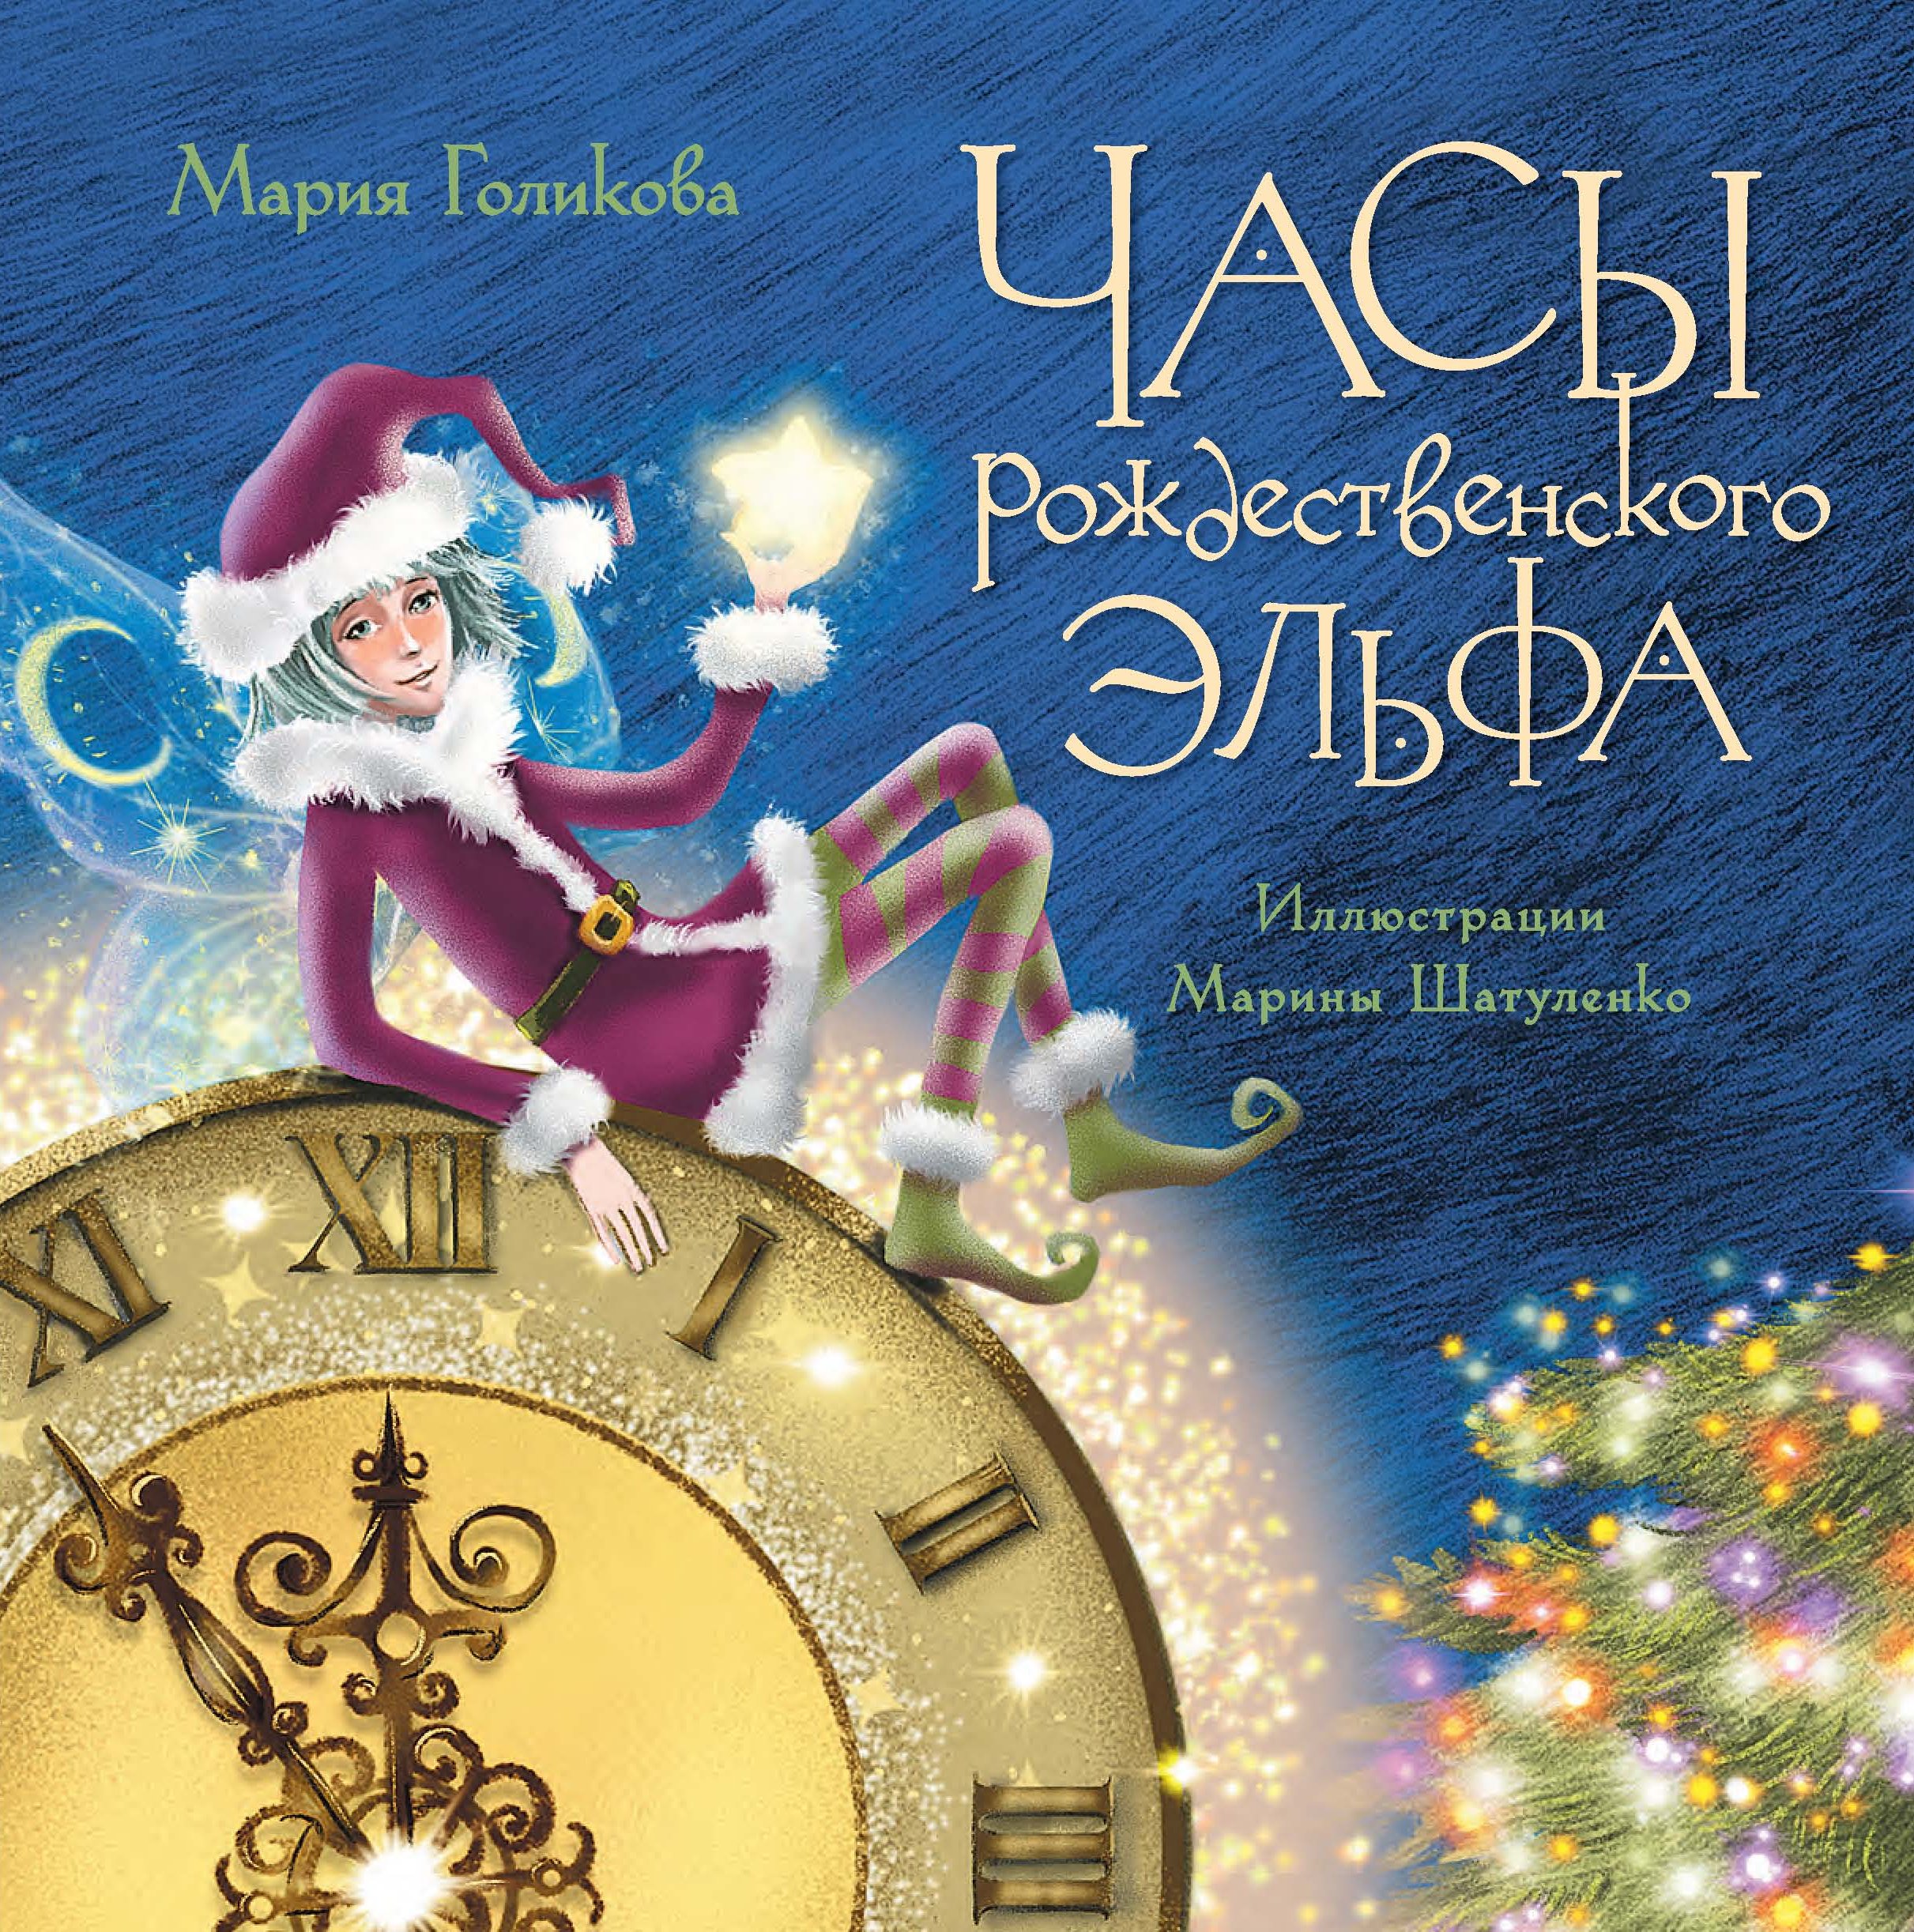 Часы рождественского эльфа, Мария Голикова – скачать книгу fb2, epub .